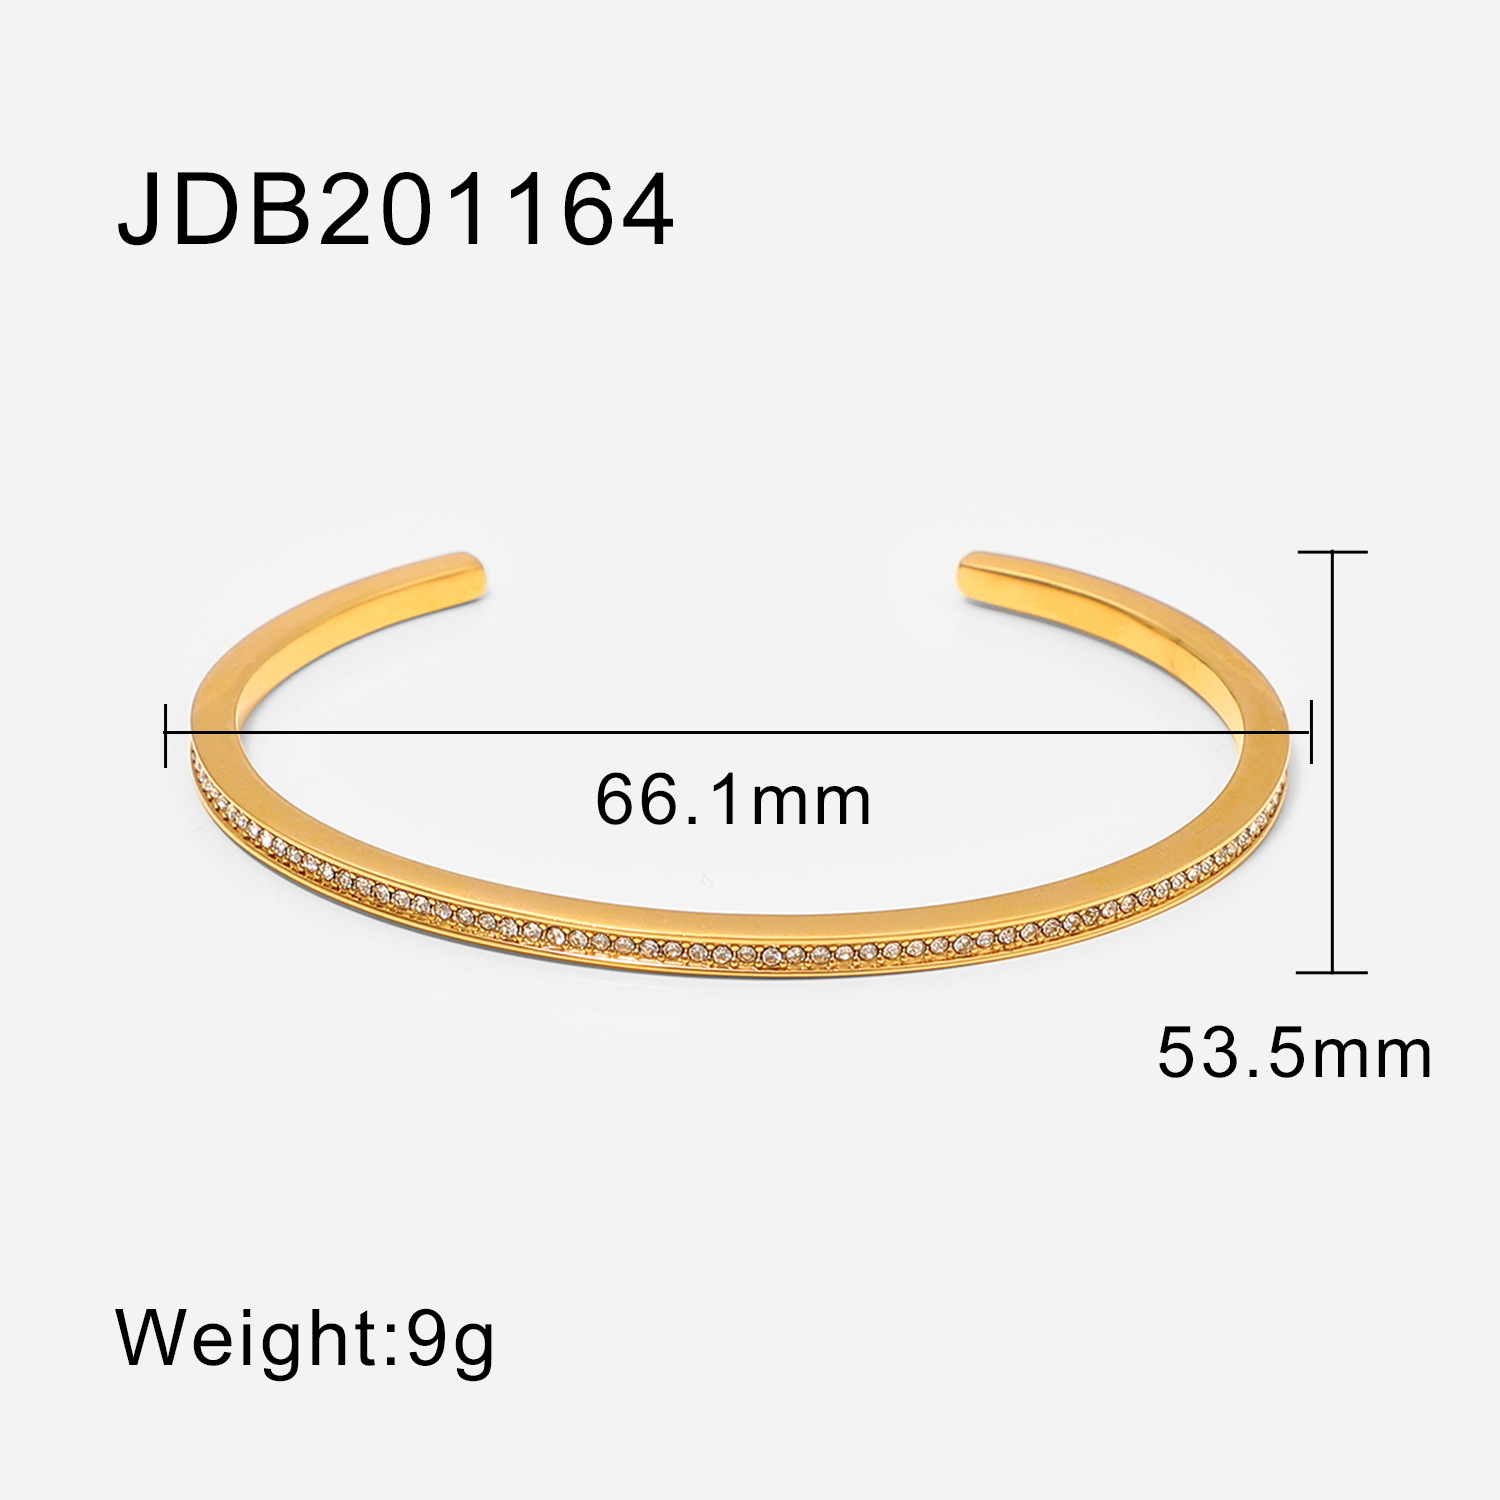 JDB201164 size